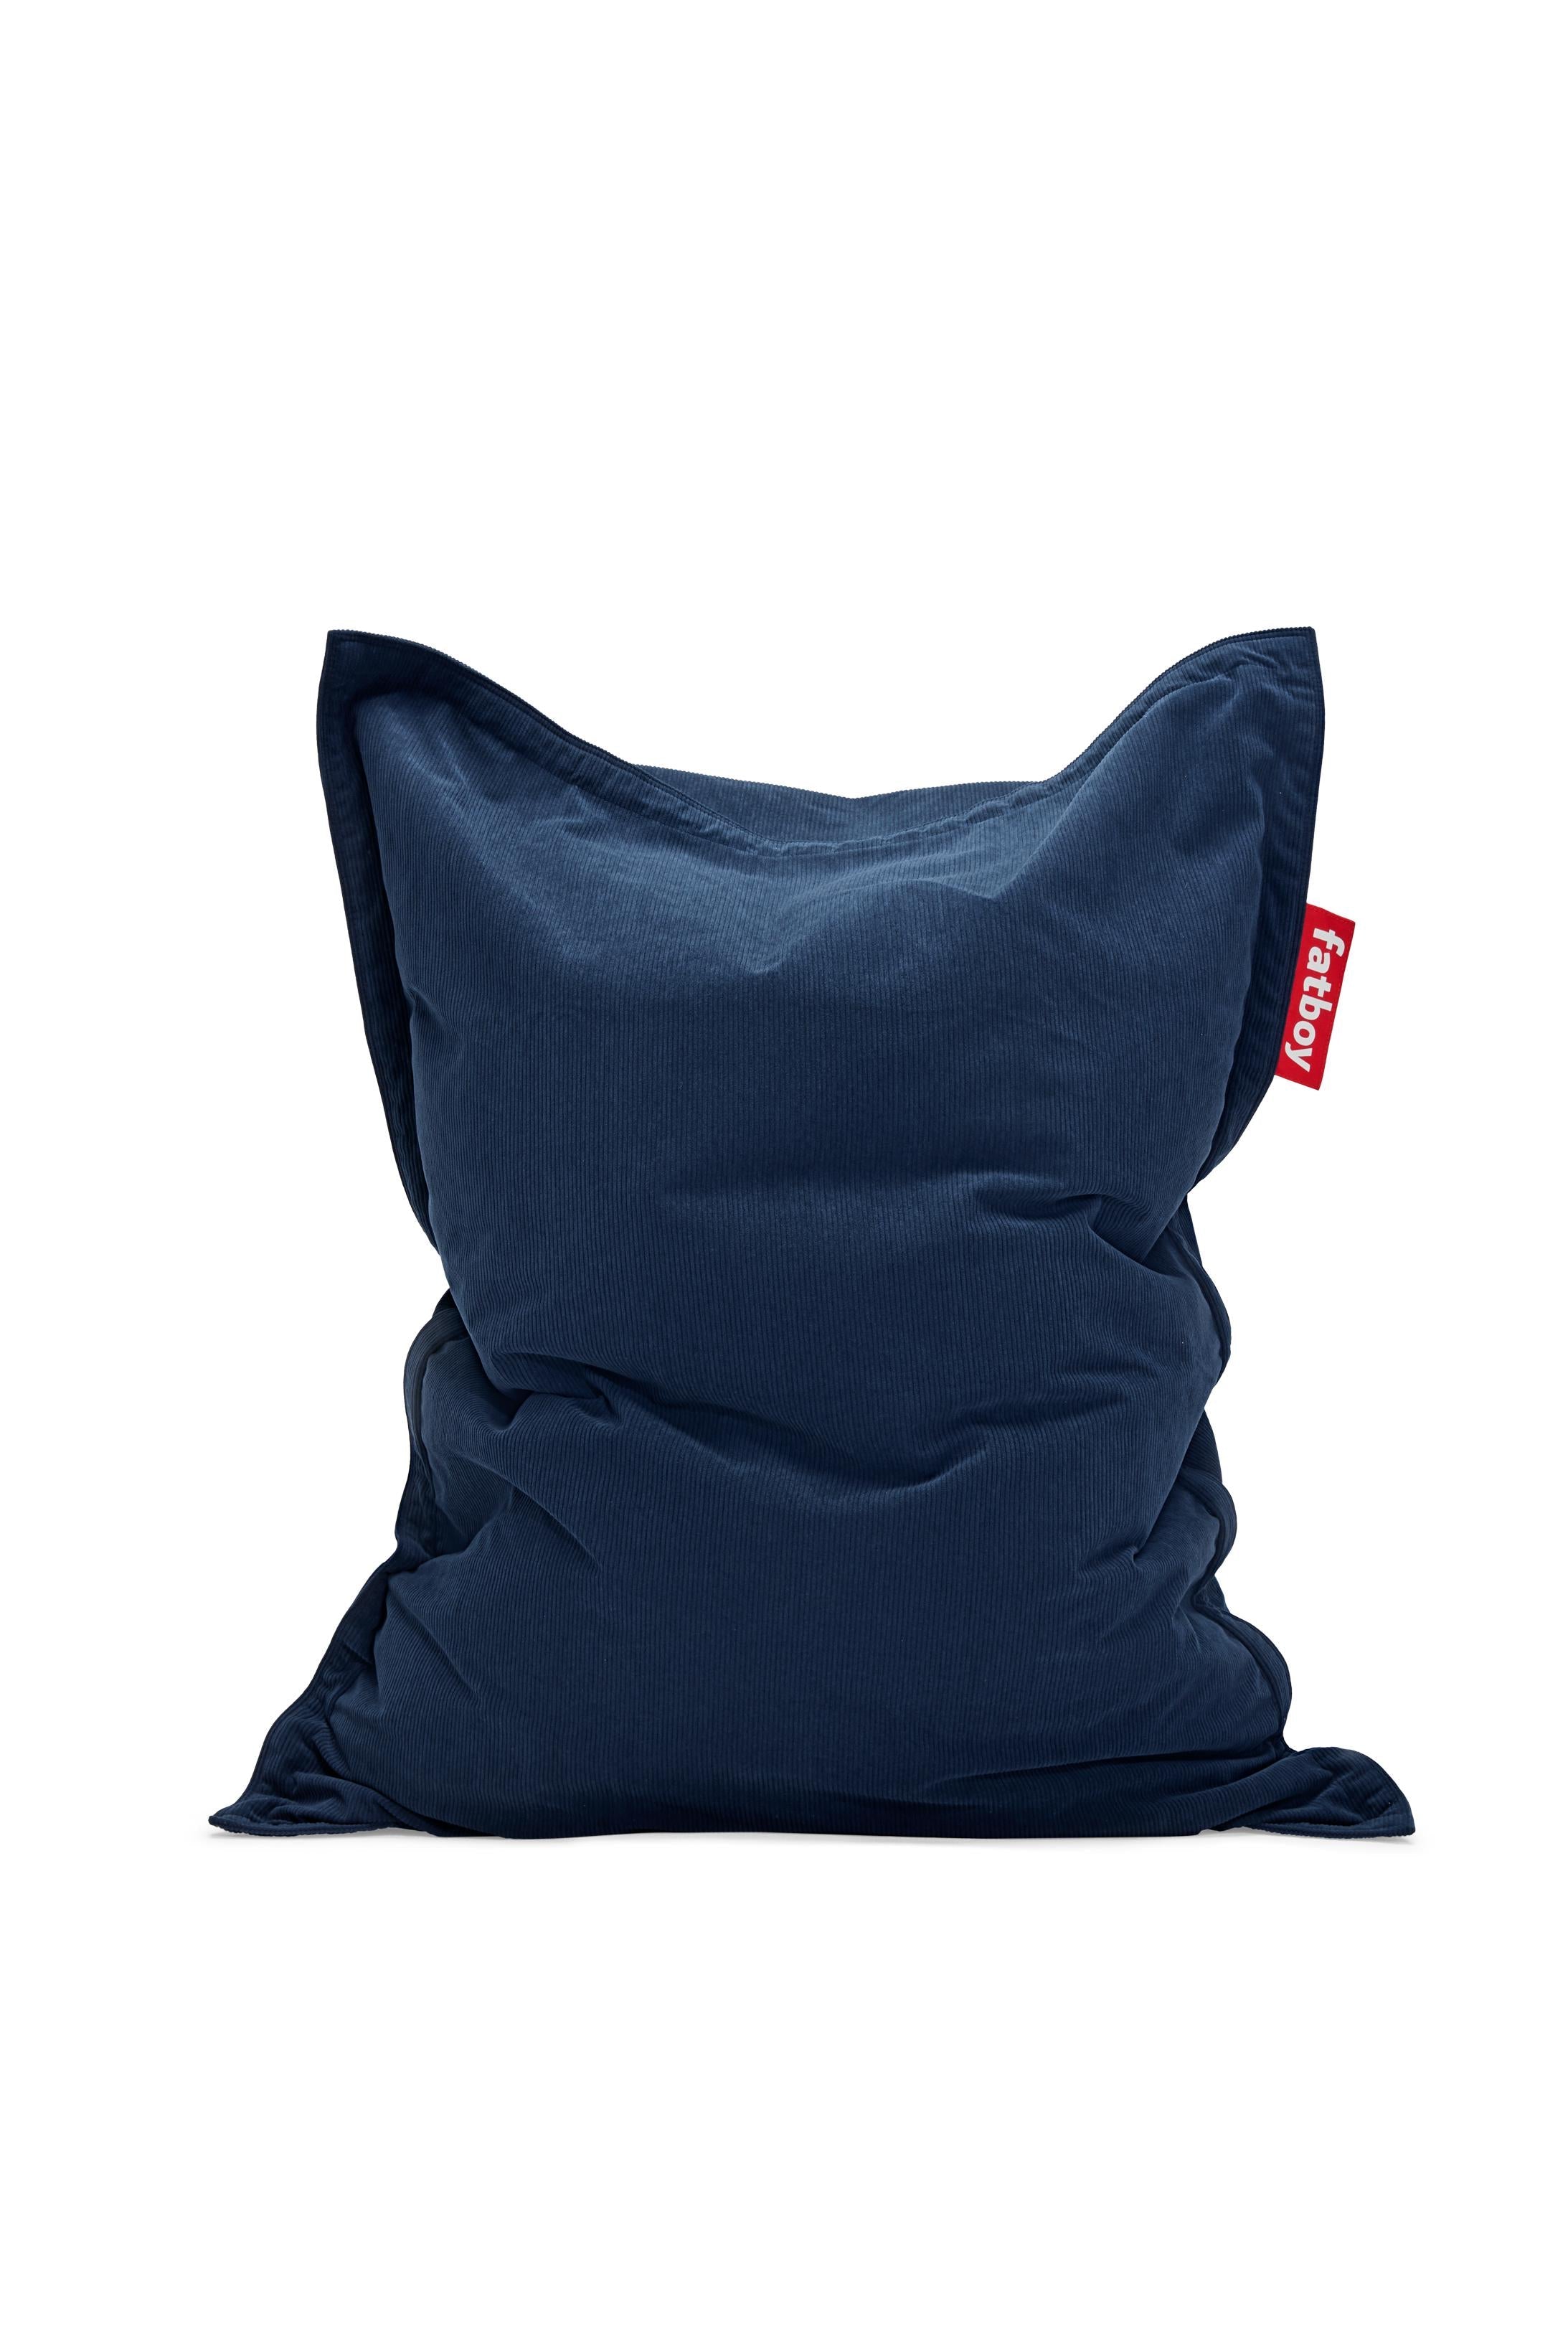 Fatboy recyklovaný originální štíhlý beanbag, tmavě modrá